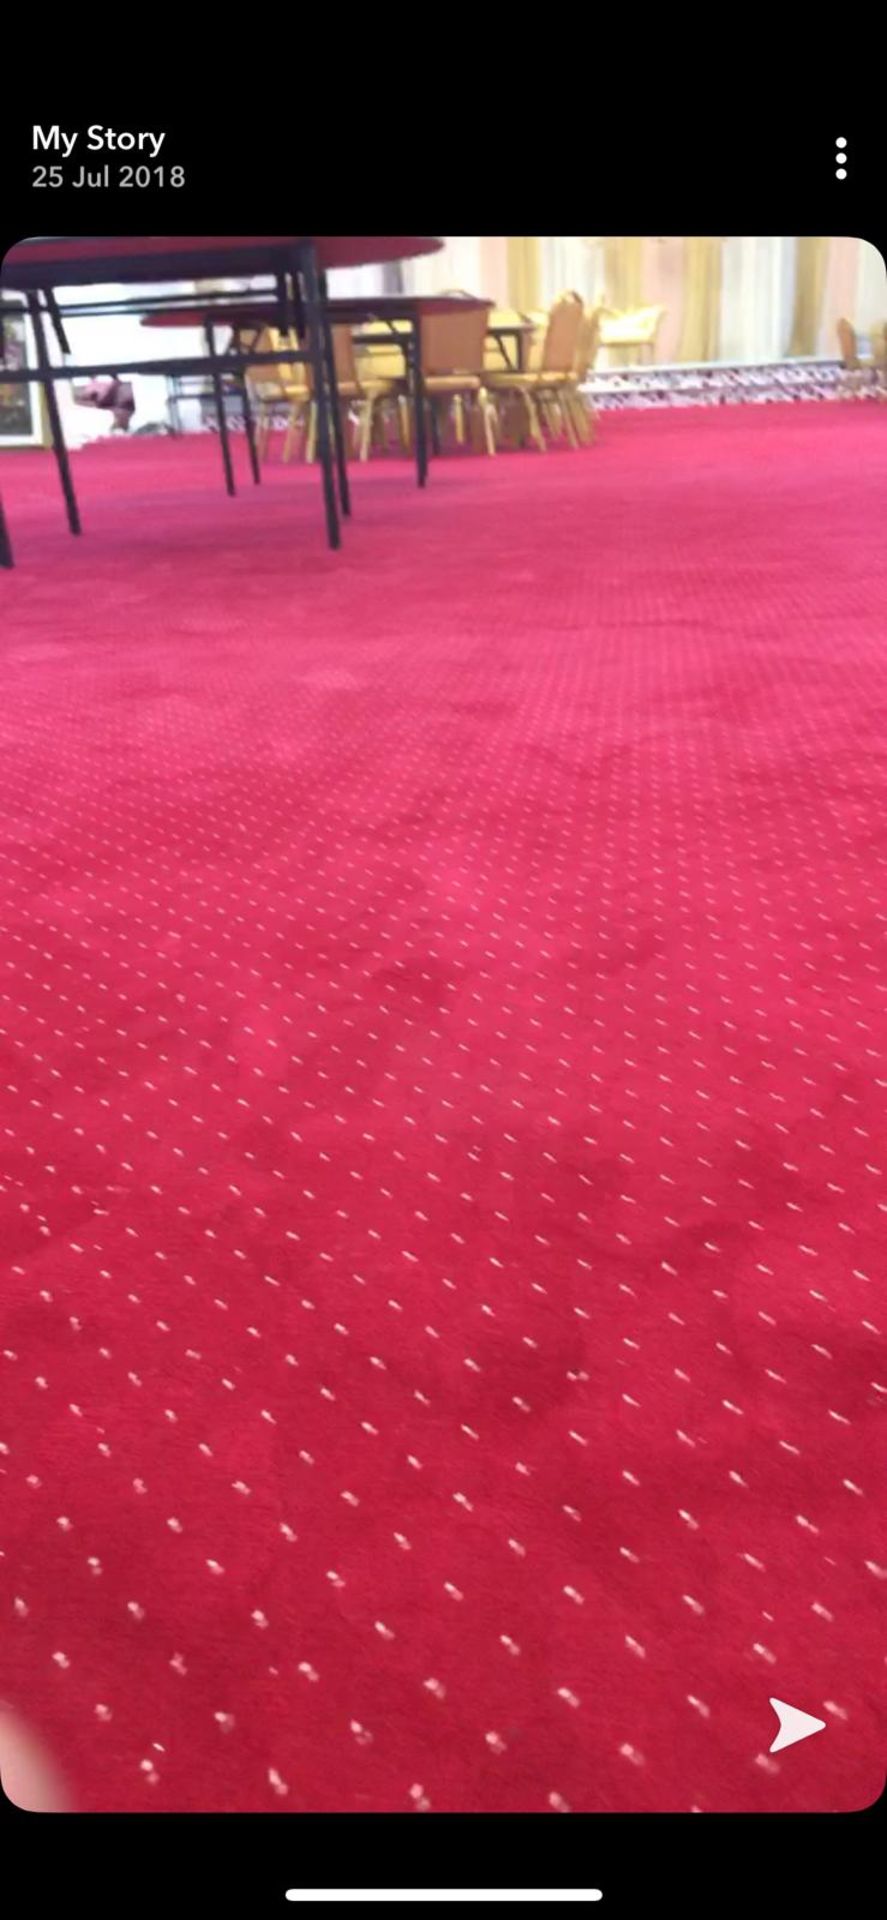 1 Roll, Red Wilton Carpet 13 metres x 4 Metres - Image 5 of 5